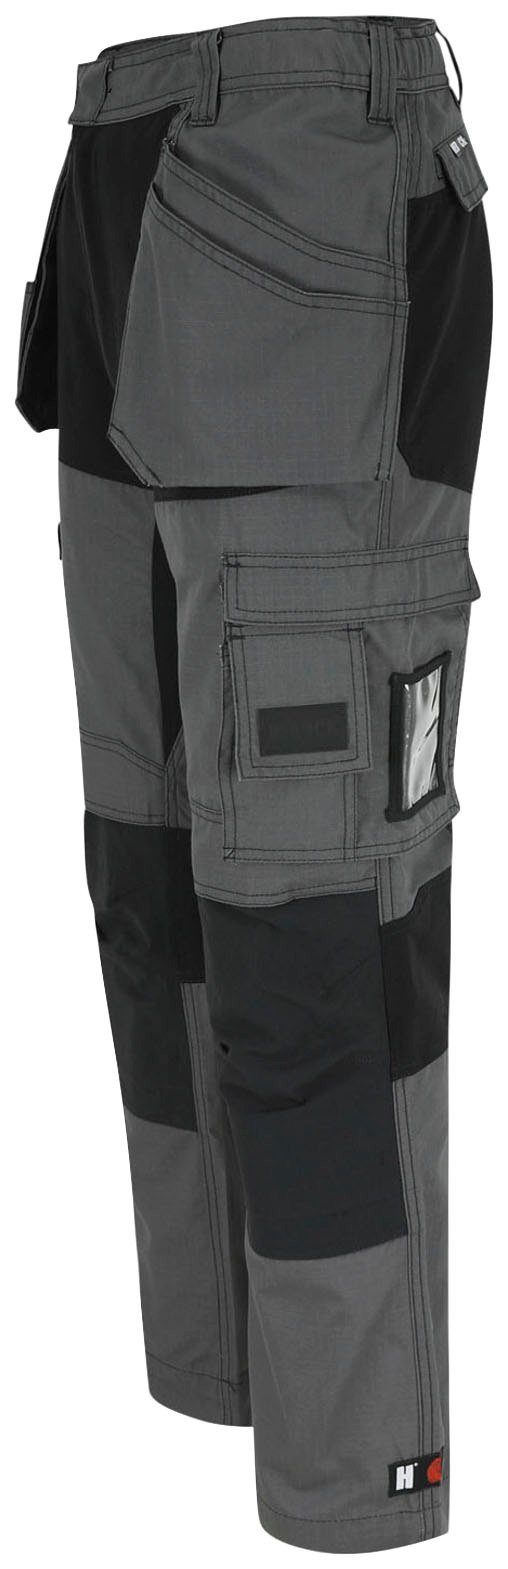 Multi-Pocket-Hose Nageltaschen Spector Hose und mit 4-Wege-Stretch-Teilen festen grau-schwarz 2 Herock Arbeitshose